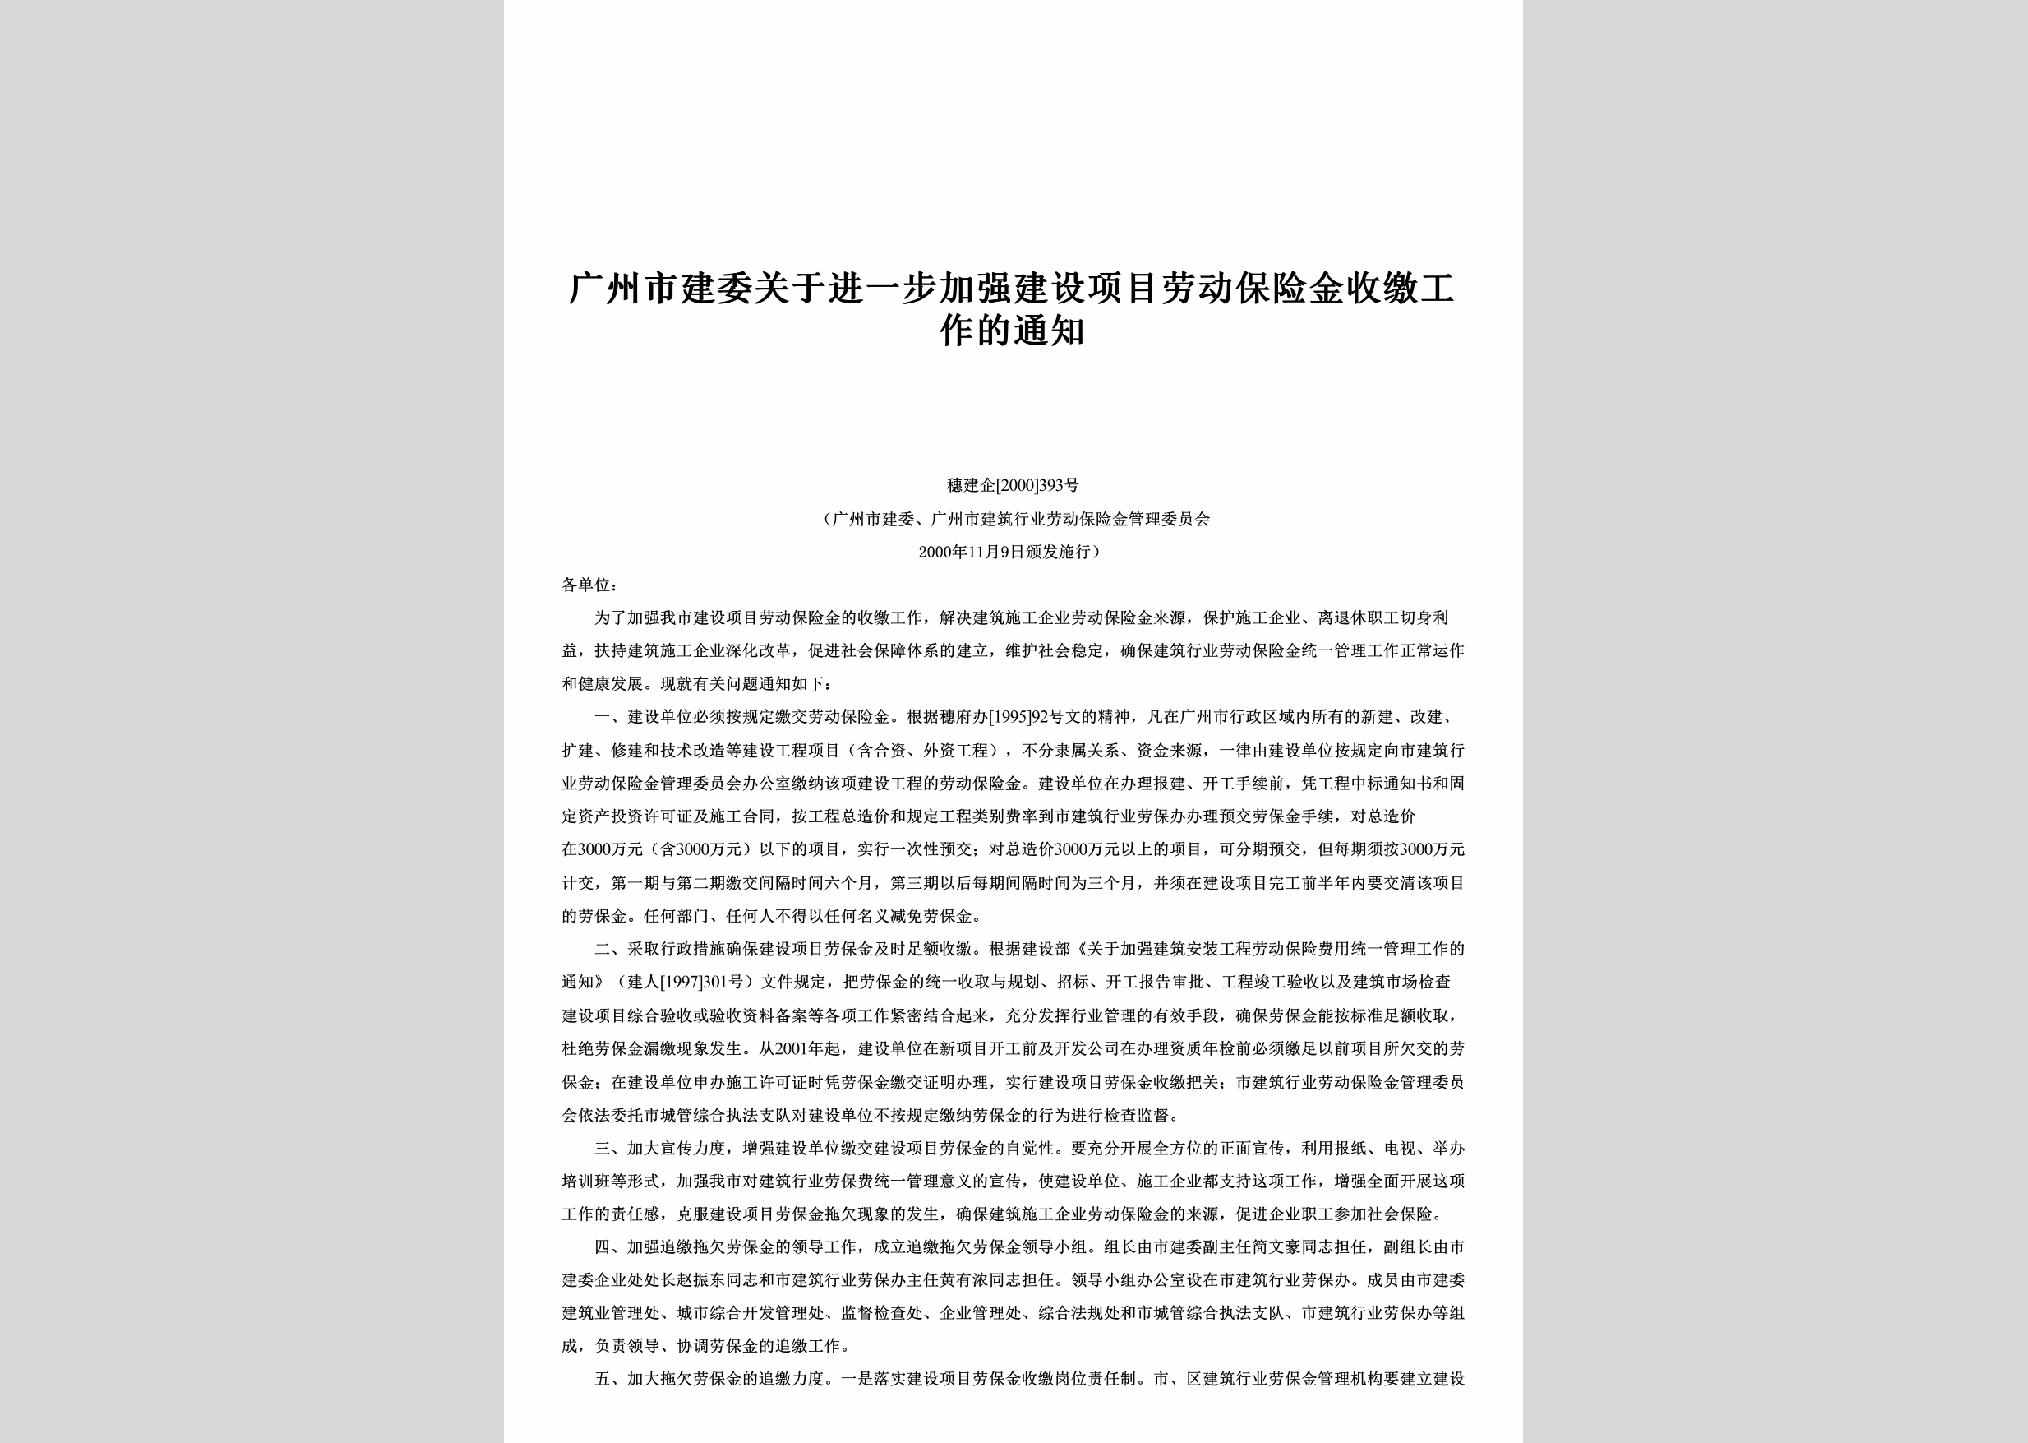 穗建企[2000]393号：广州市建委关于进一步加强建设项目劳动保险金收缴工作的通知